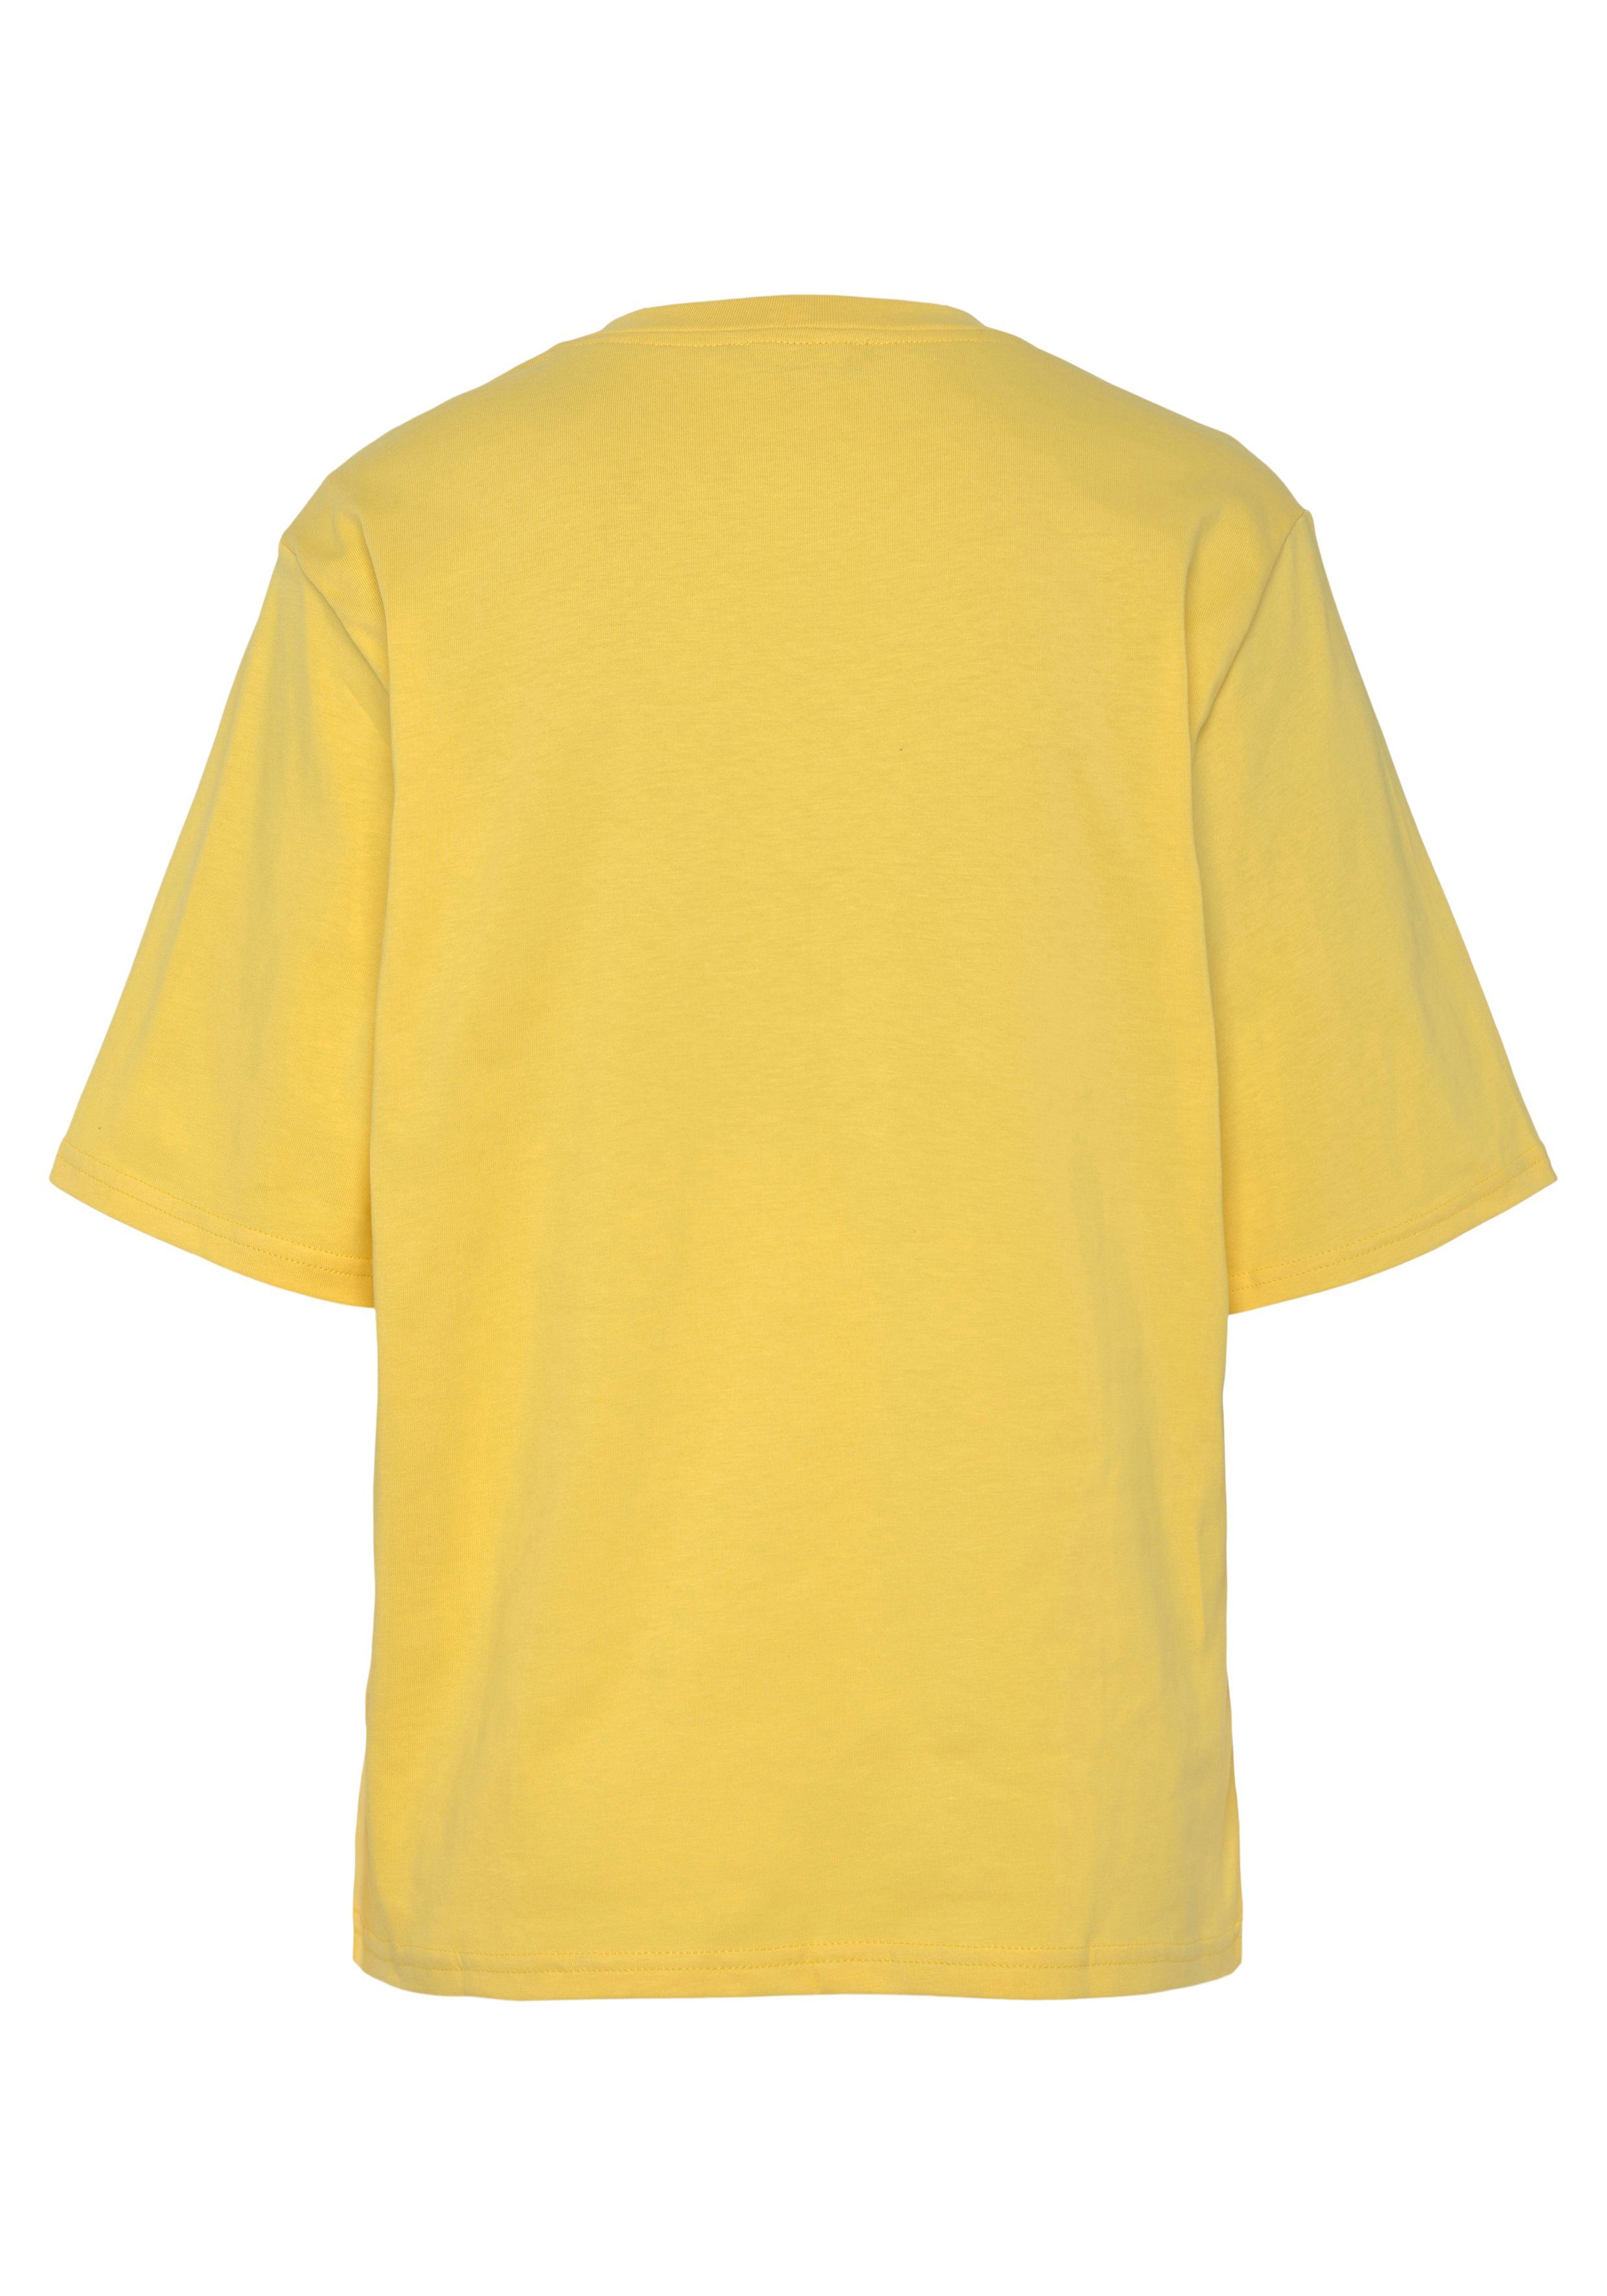 United Colors of der mit gelb T-Shirt Brust Logodruck Benetton auf